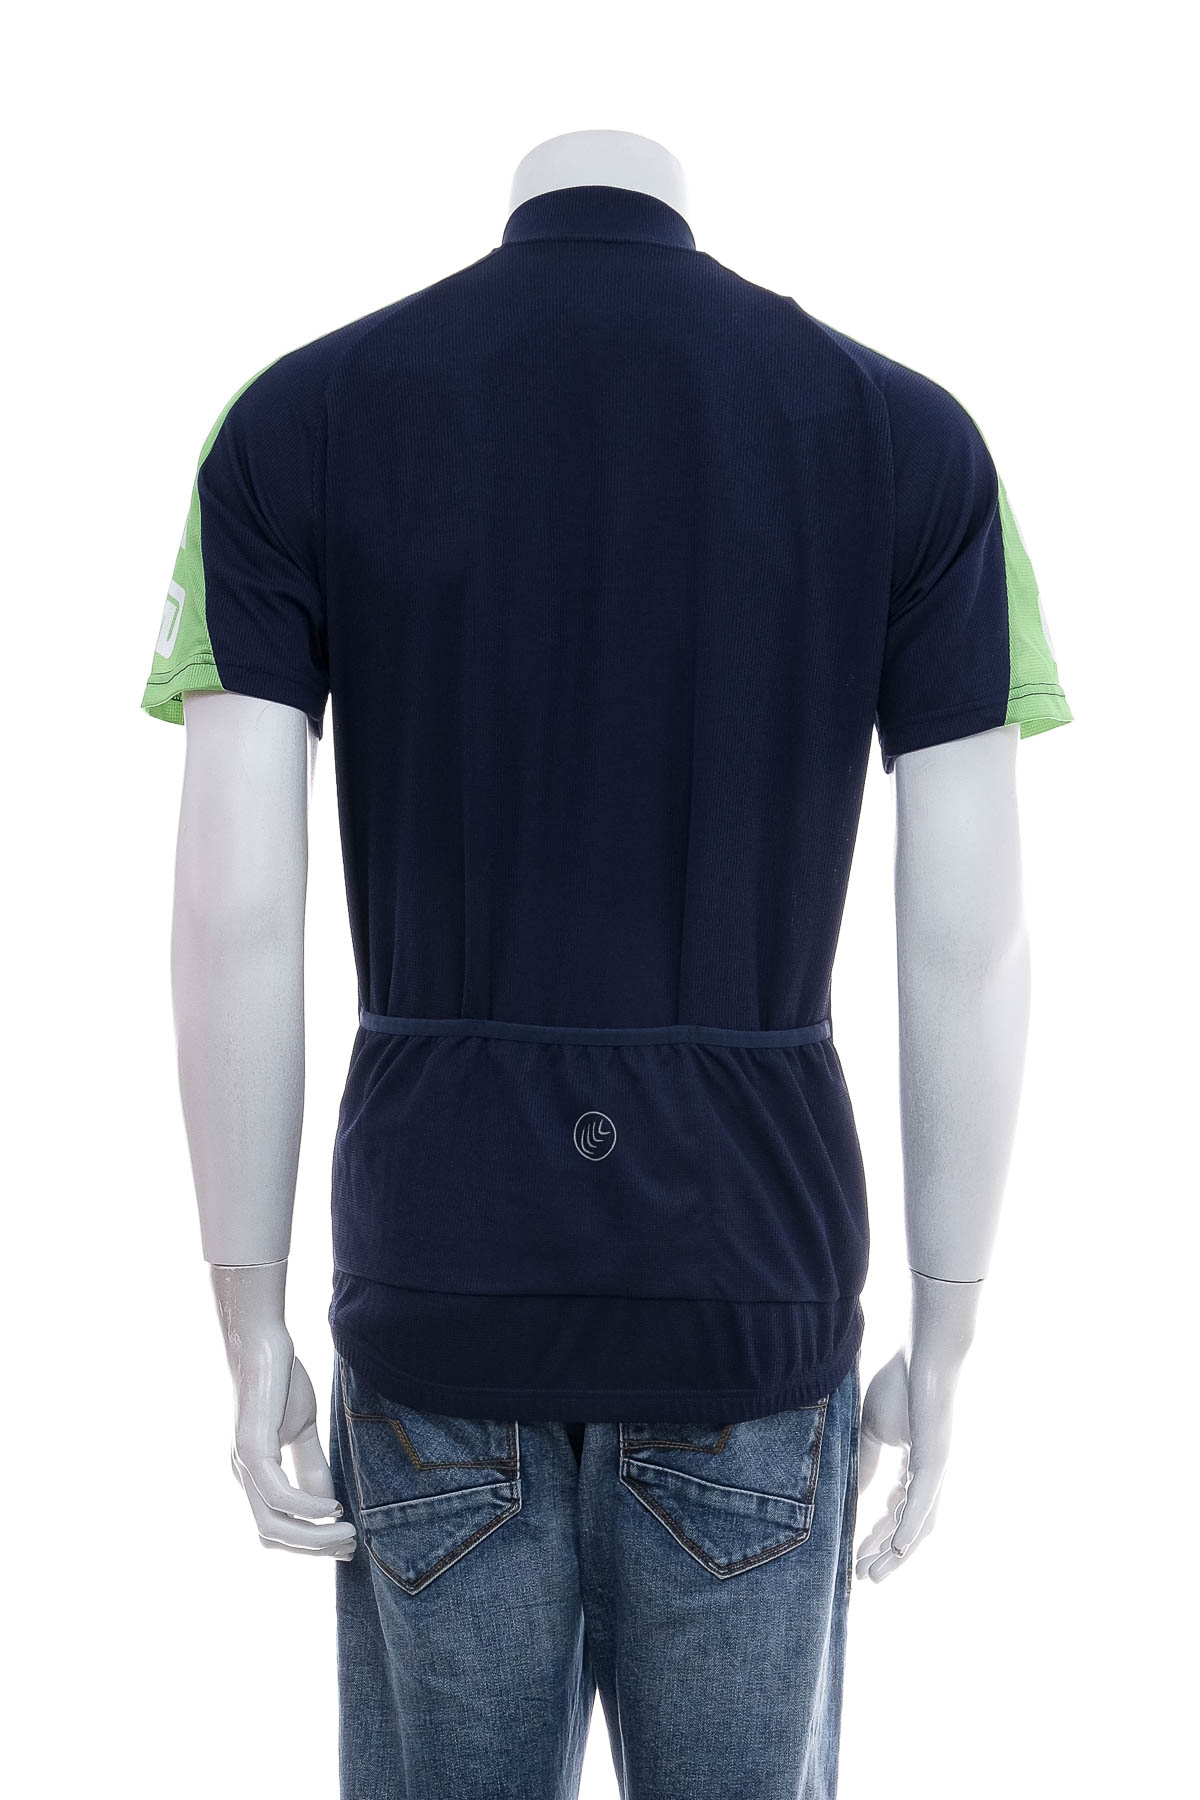 Αντρική μπλούζα Για ποδηλασία - TechTex - 1